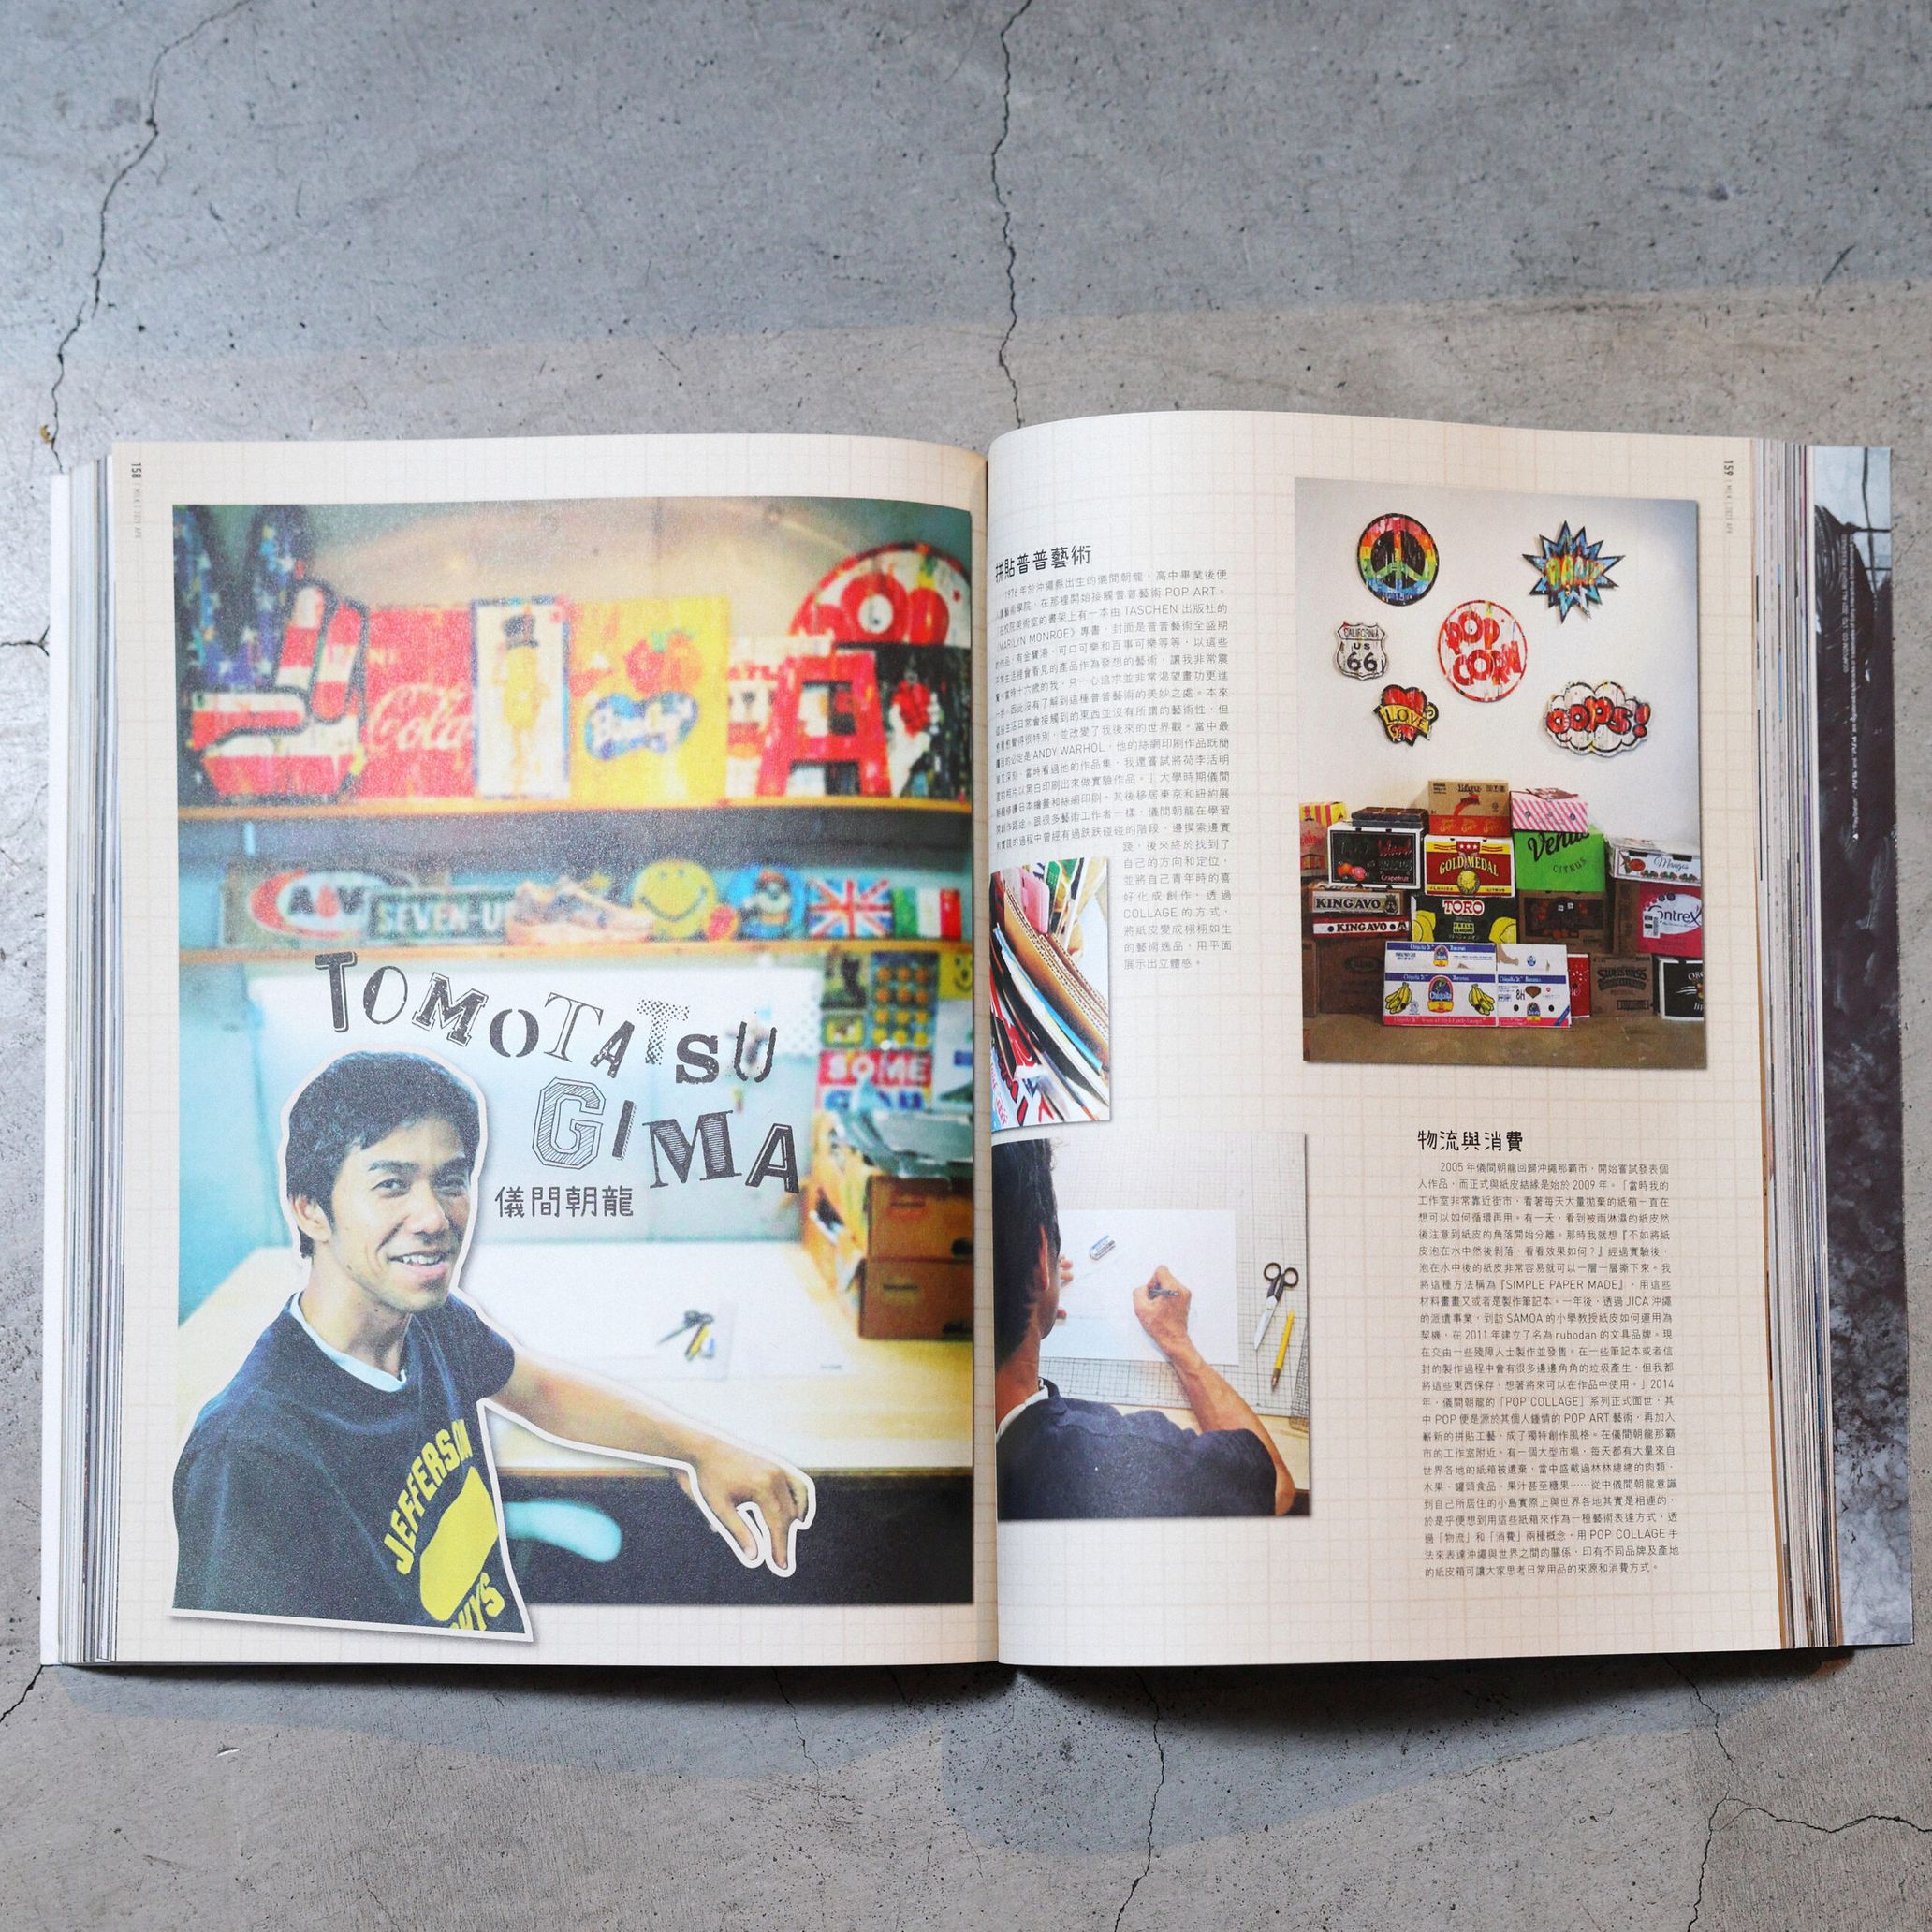 過去に香港のカルチャー雑誌『MILK MAGAZINE』で、作品が表紙に採用され、インタビューも掲載された